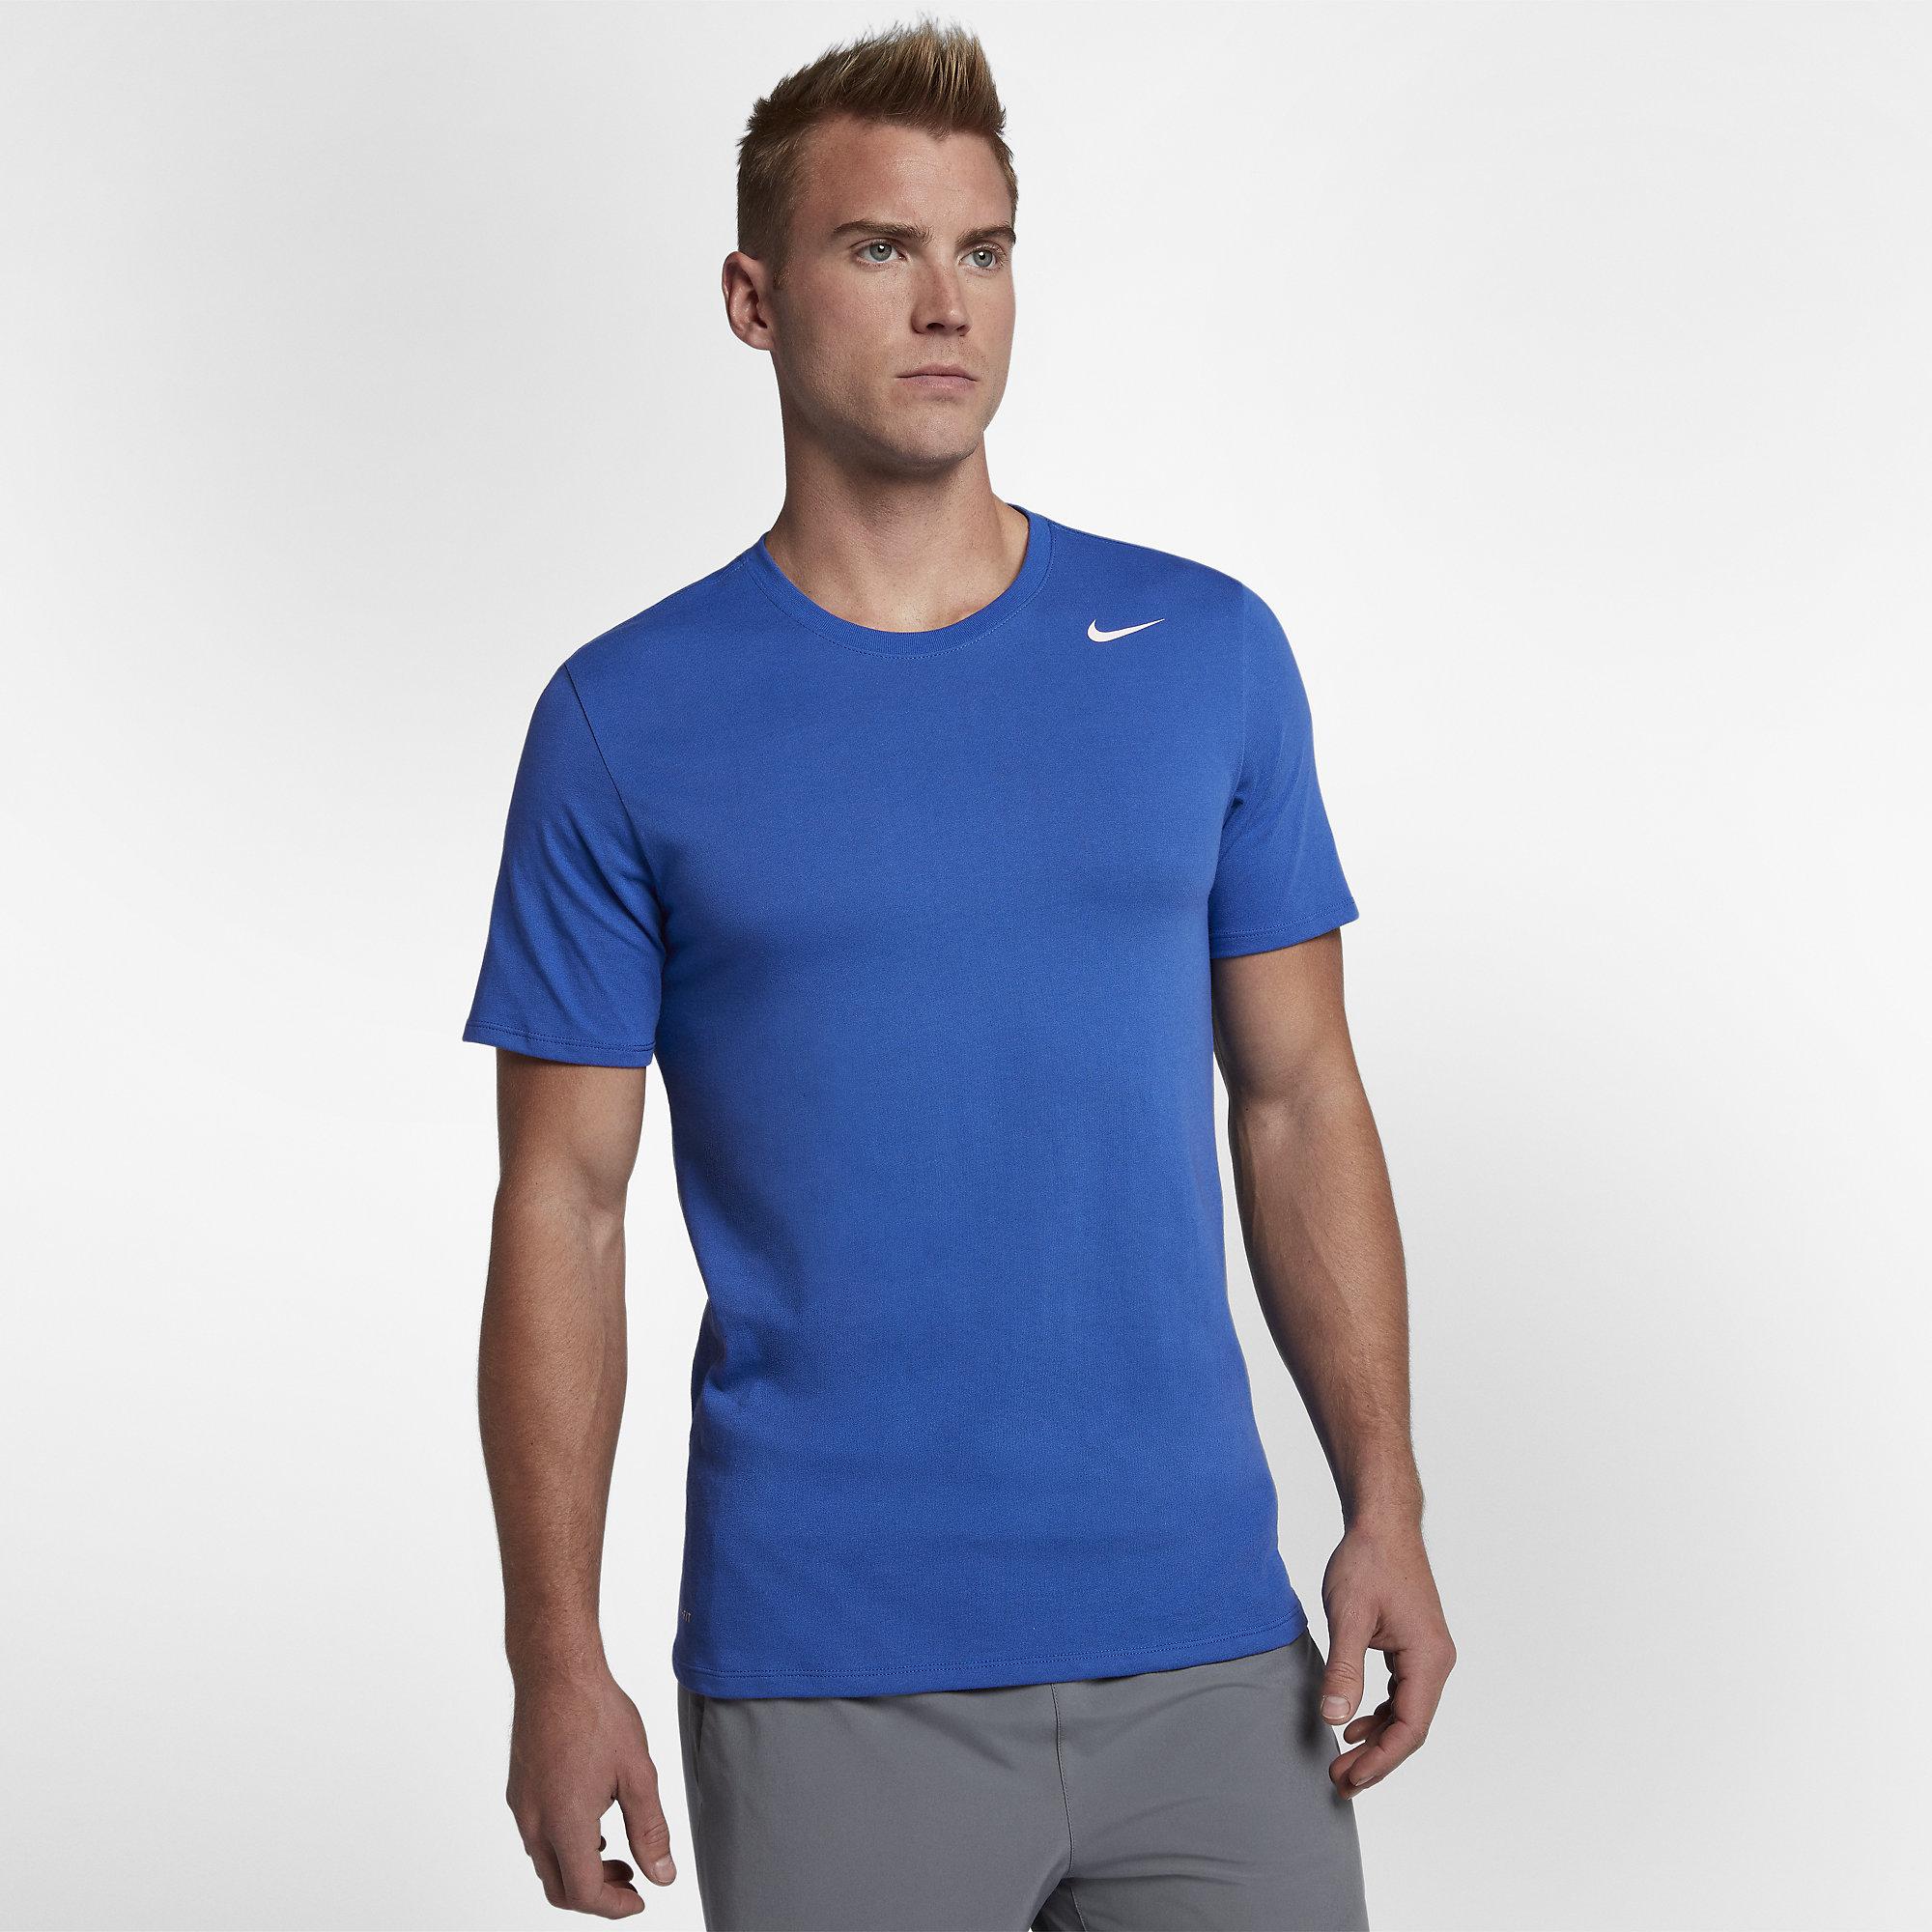 Nike Mens Dry Training T-Shirt - Game Royal/White - Tennisnuts.com